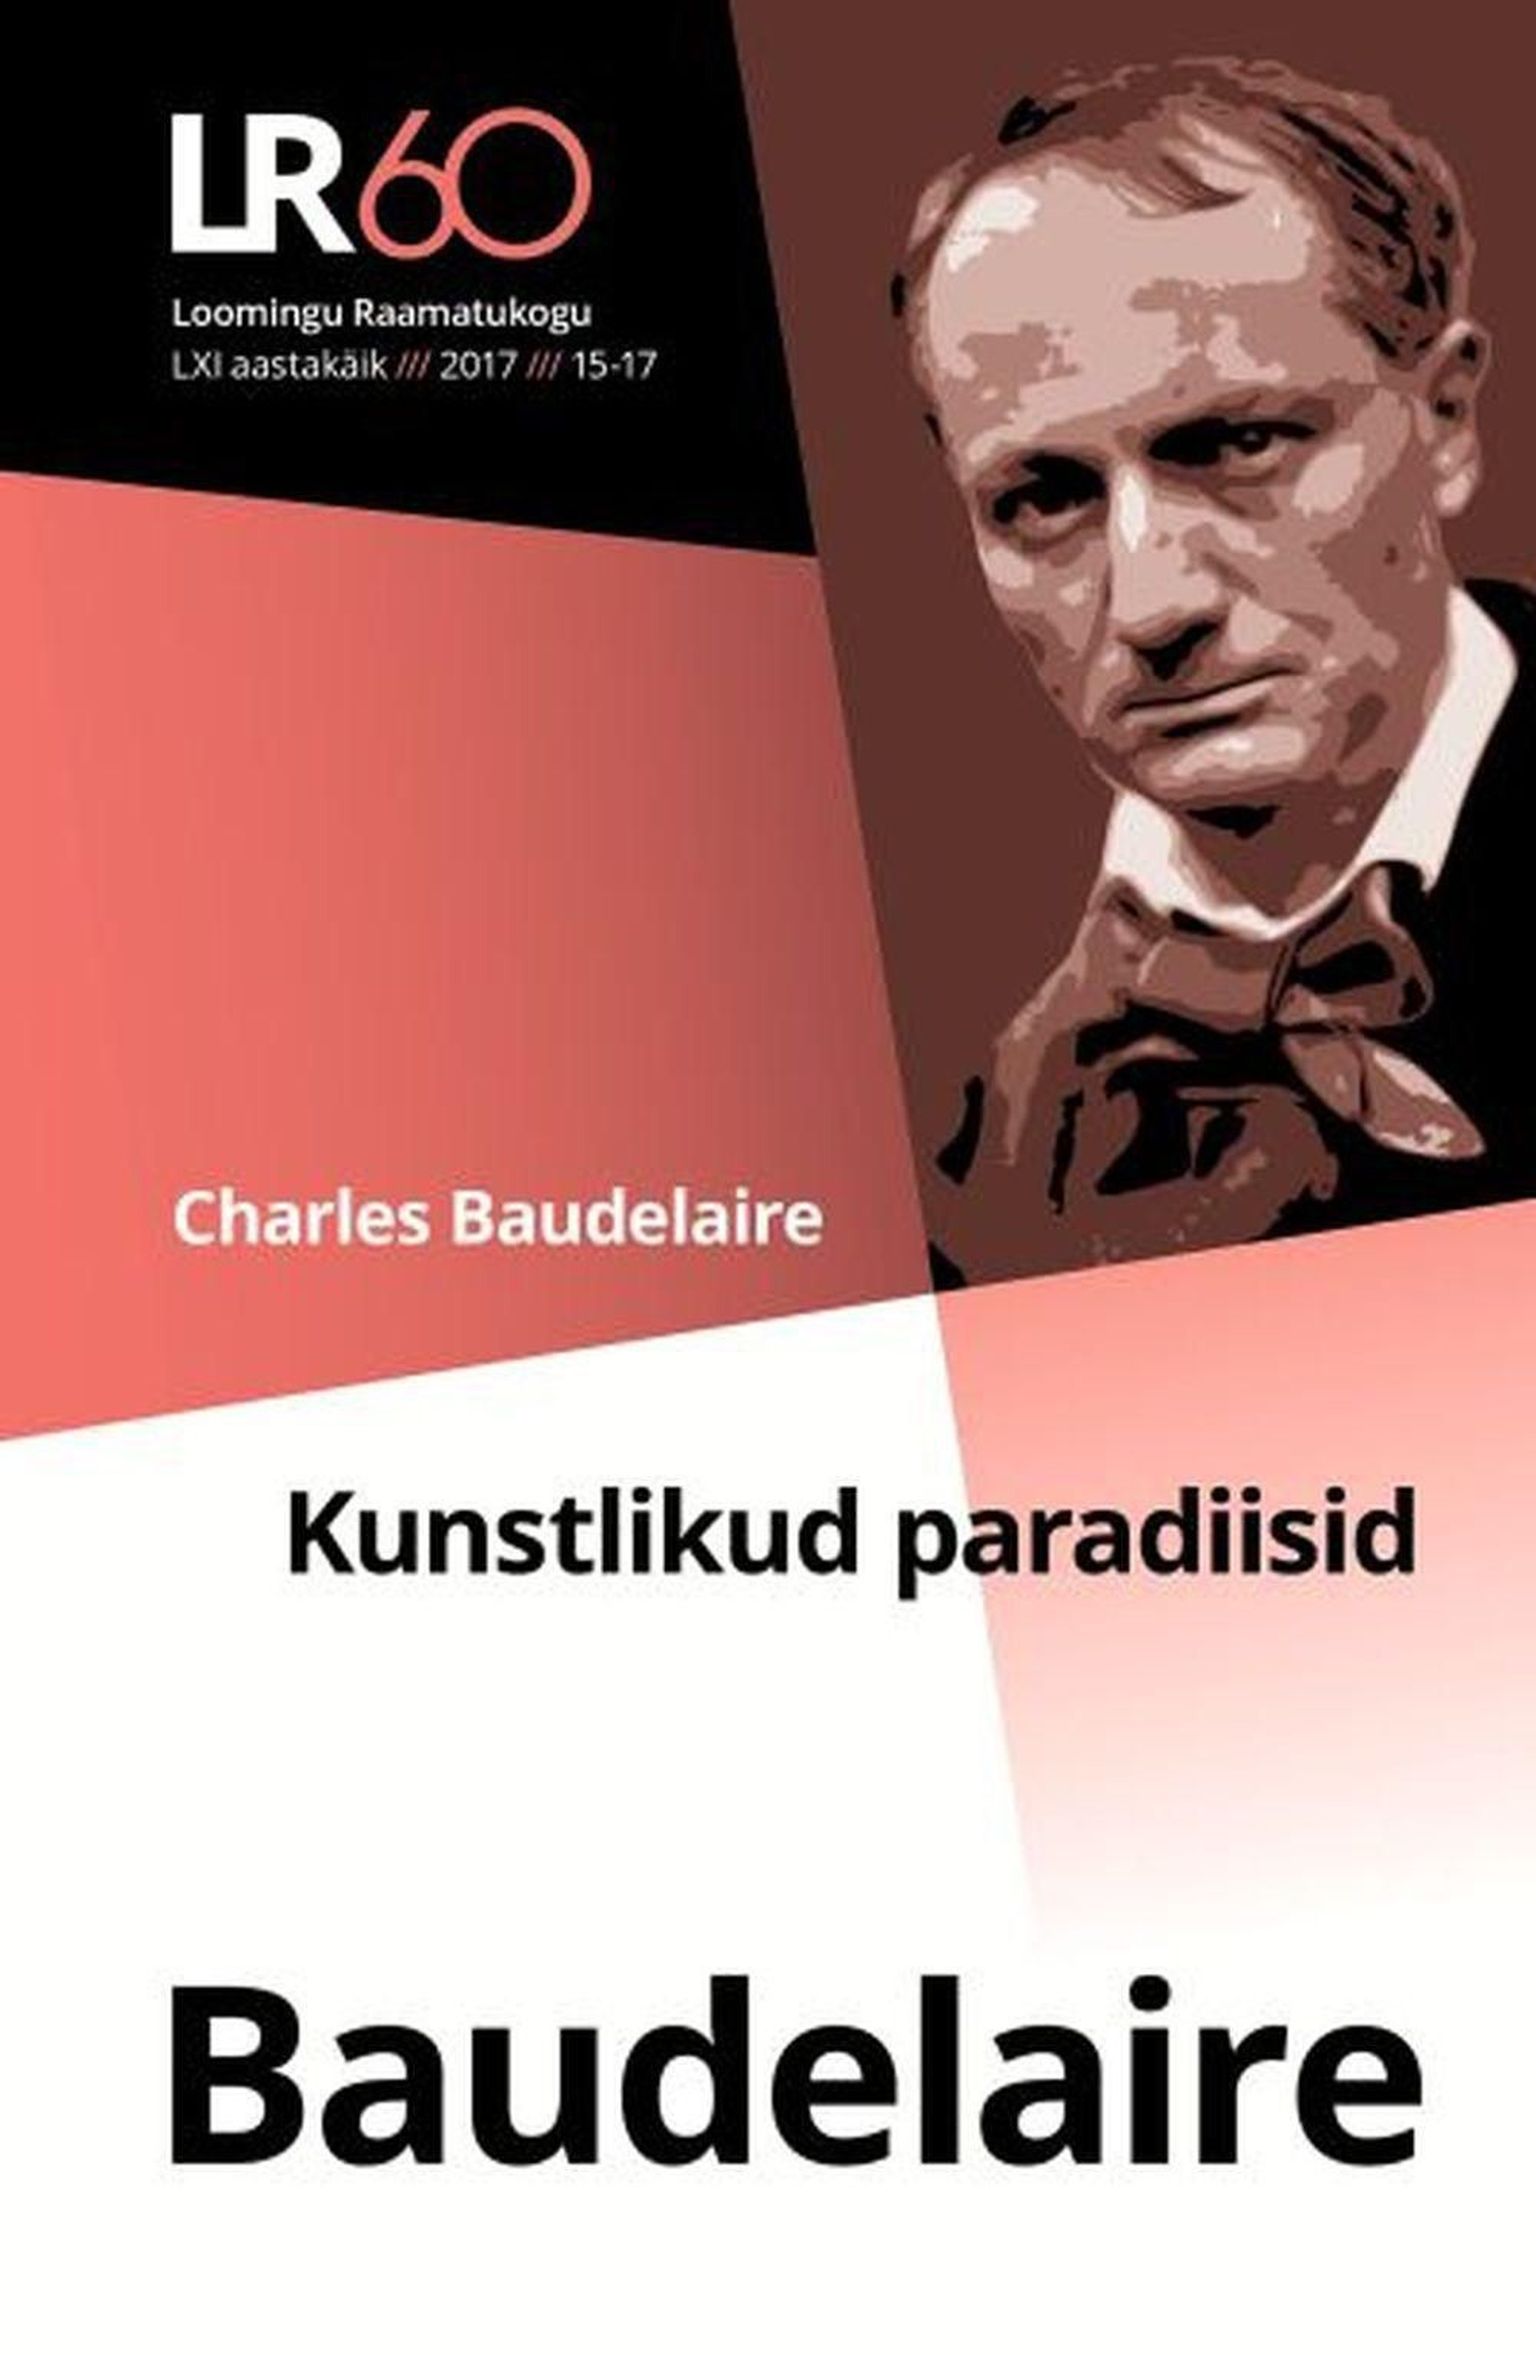 Charles Baudelaire

«Kunstlikud paradiisid»